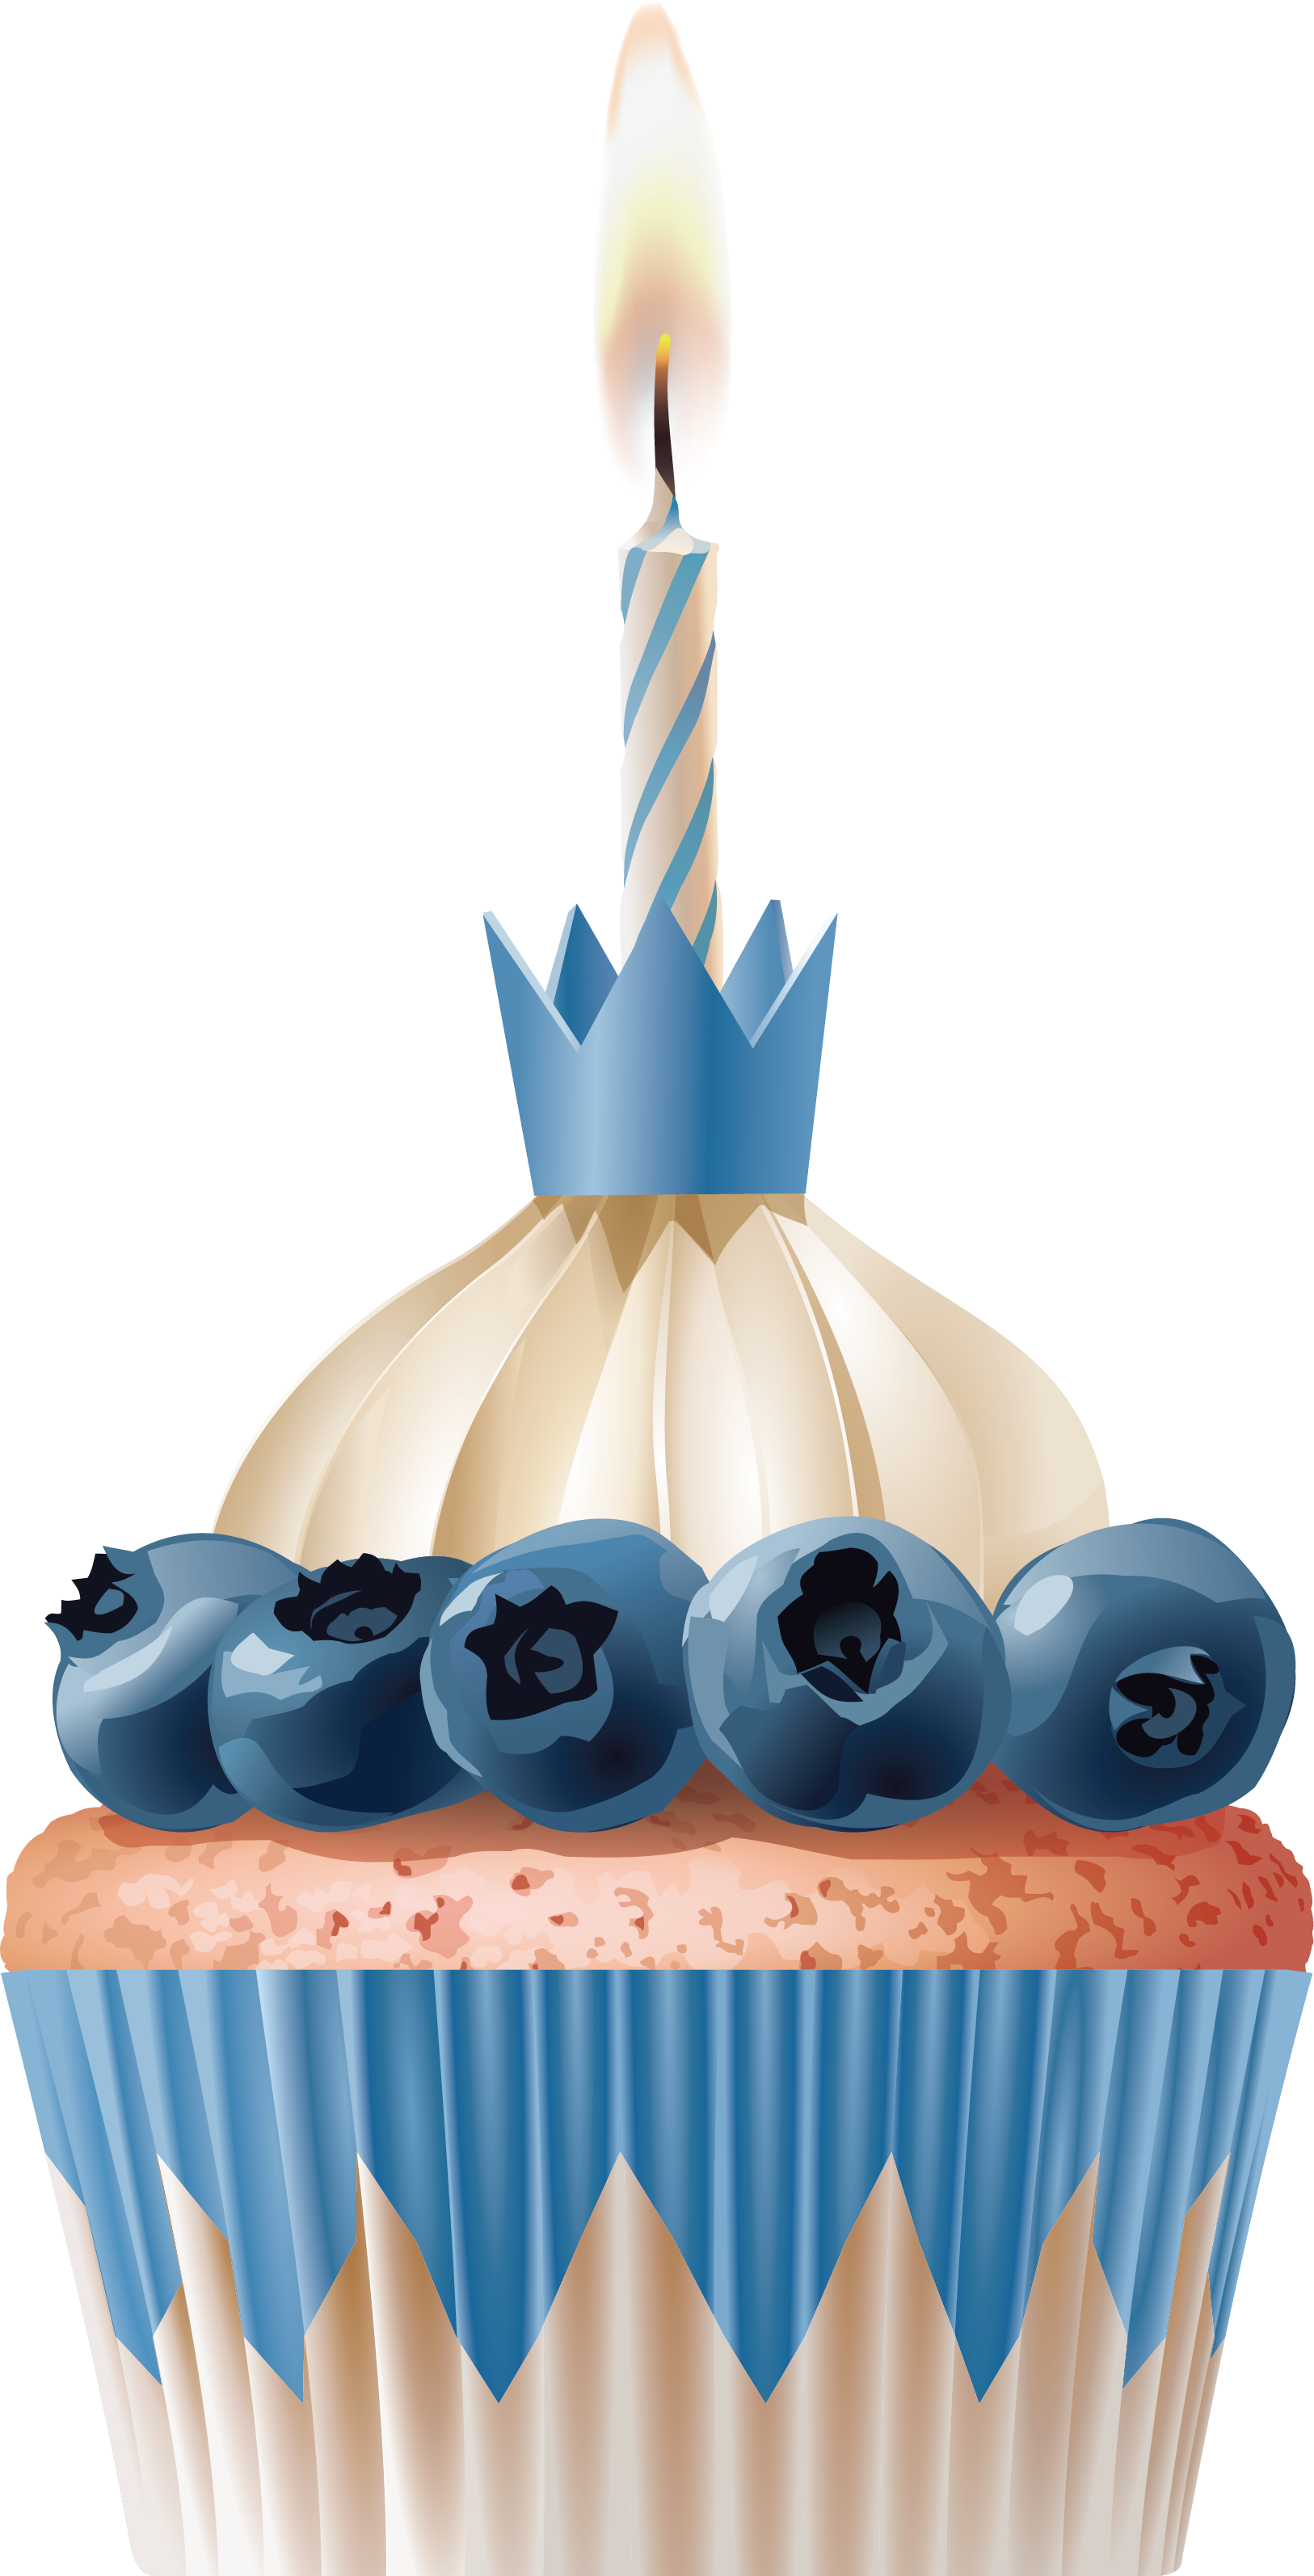 Cupcake Birthday Cake Bakery Muffin Madeleine - Cupcake Birthday Cake Bakery Muffin Madeleine (1626x3188)